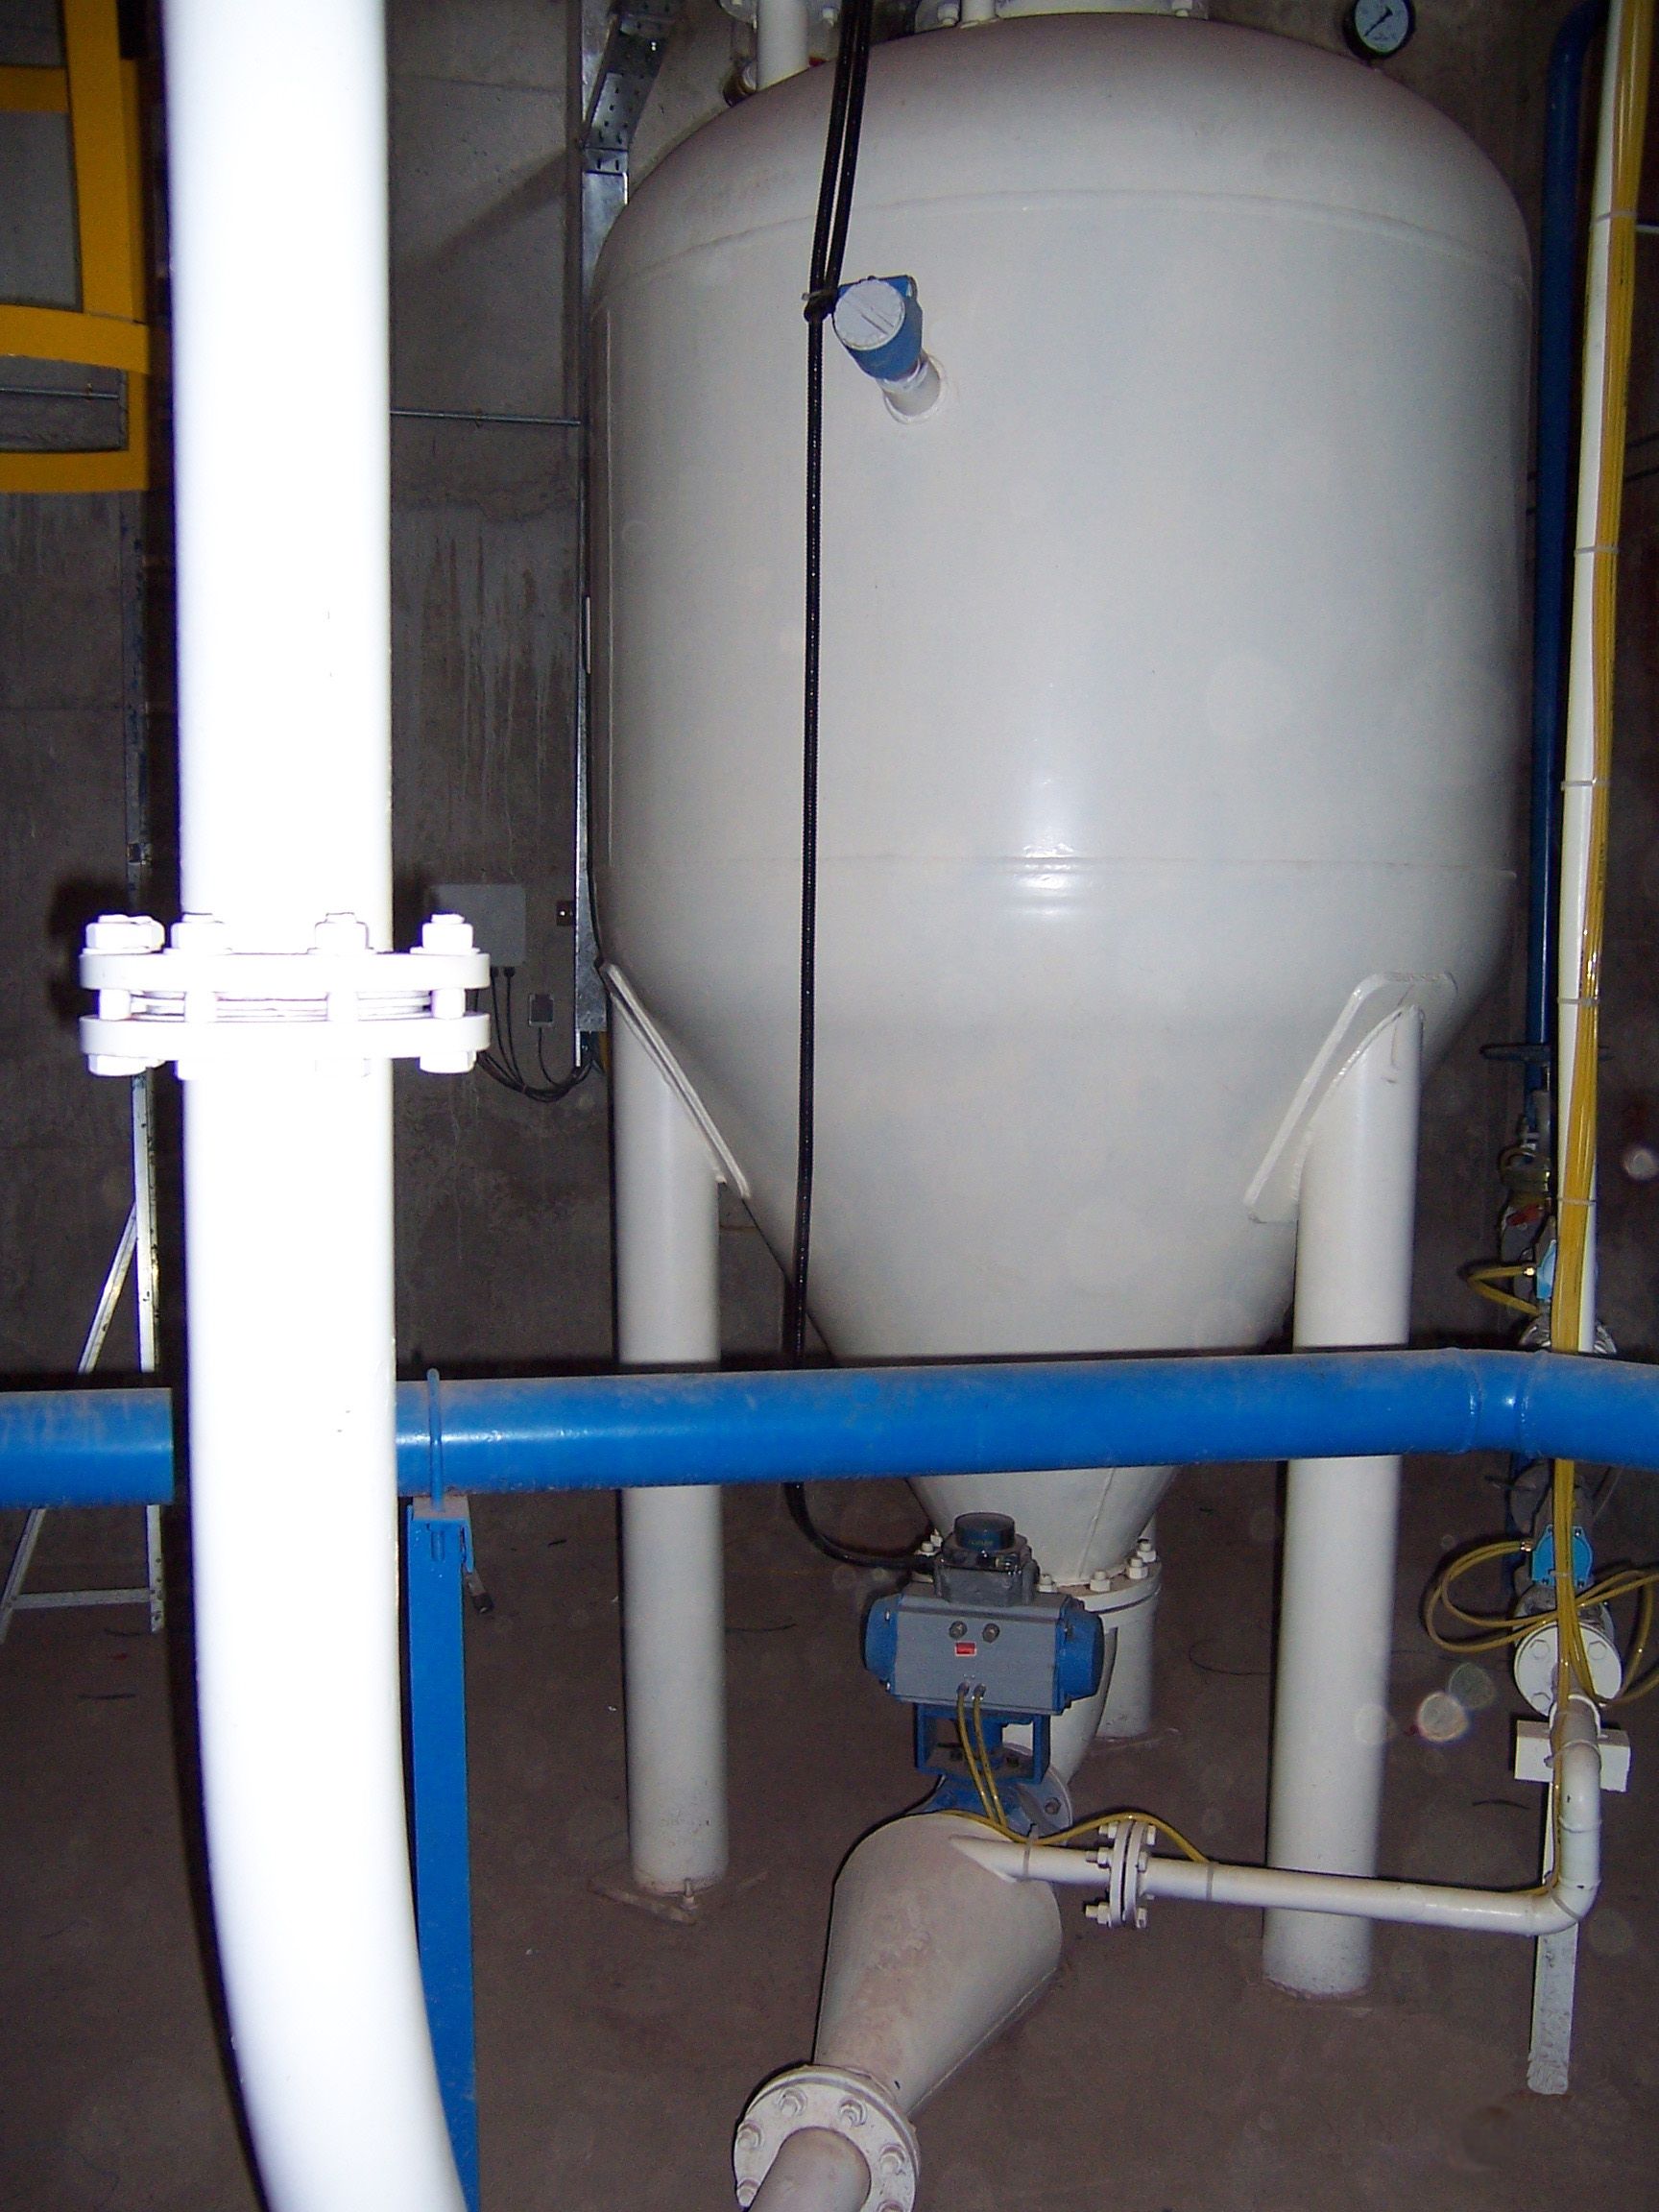 伊朗pass洗涤剂公司芒硝纯碱五钠正压密相气力输送仓泵